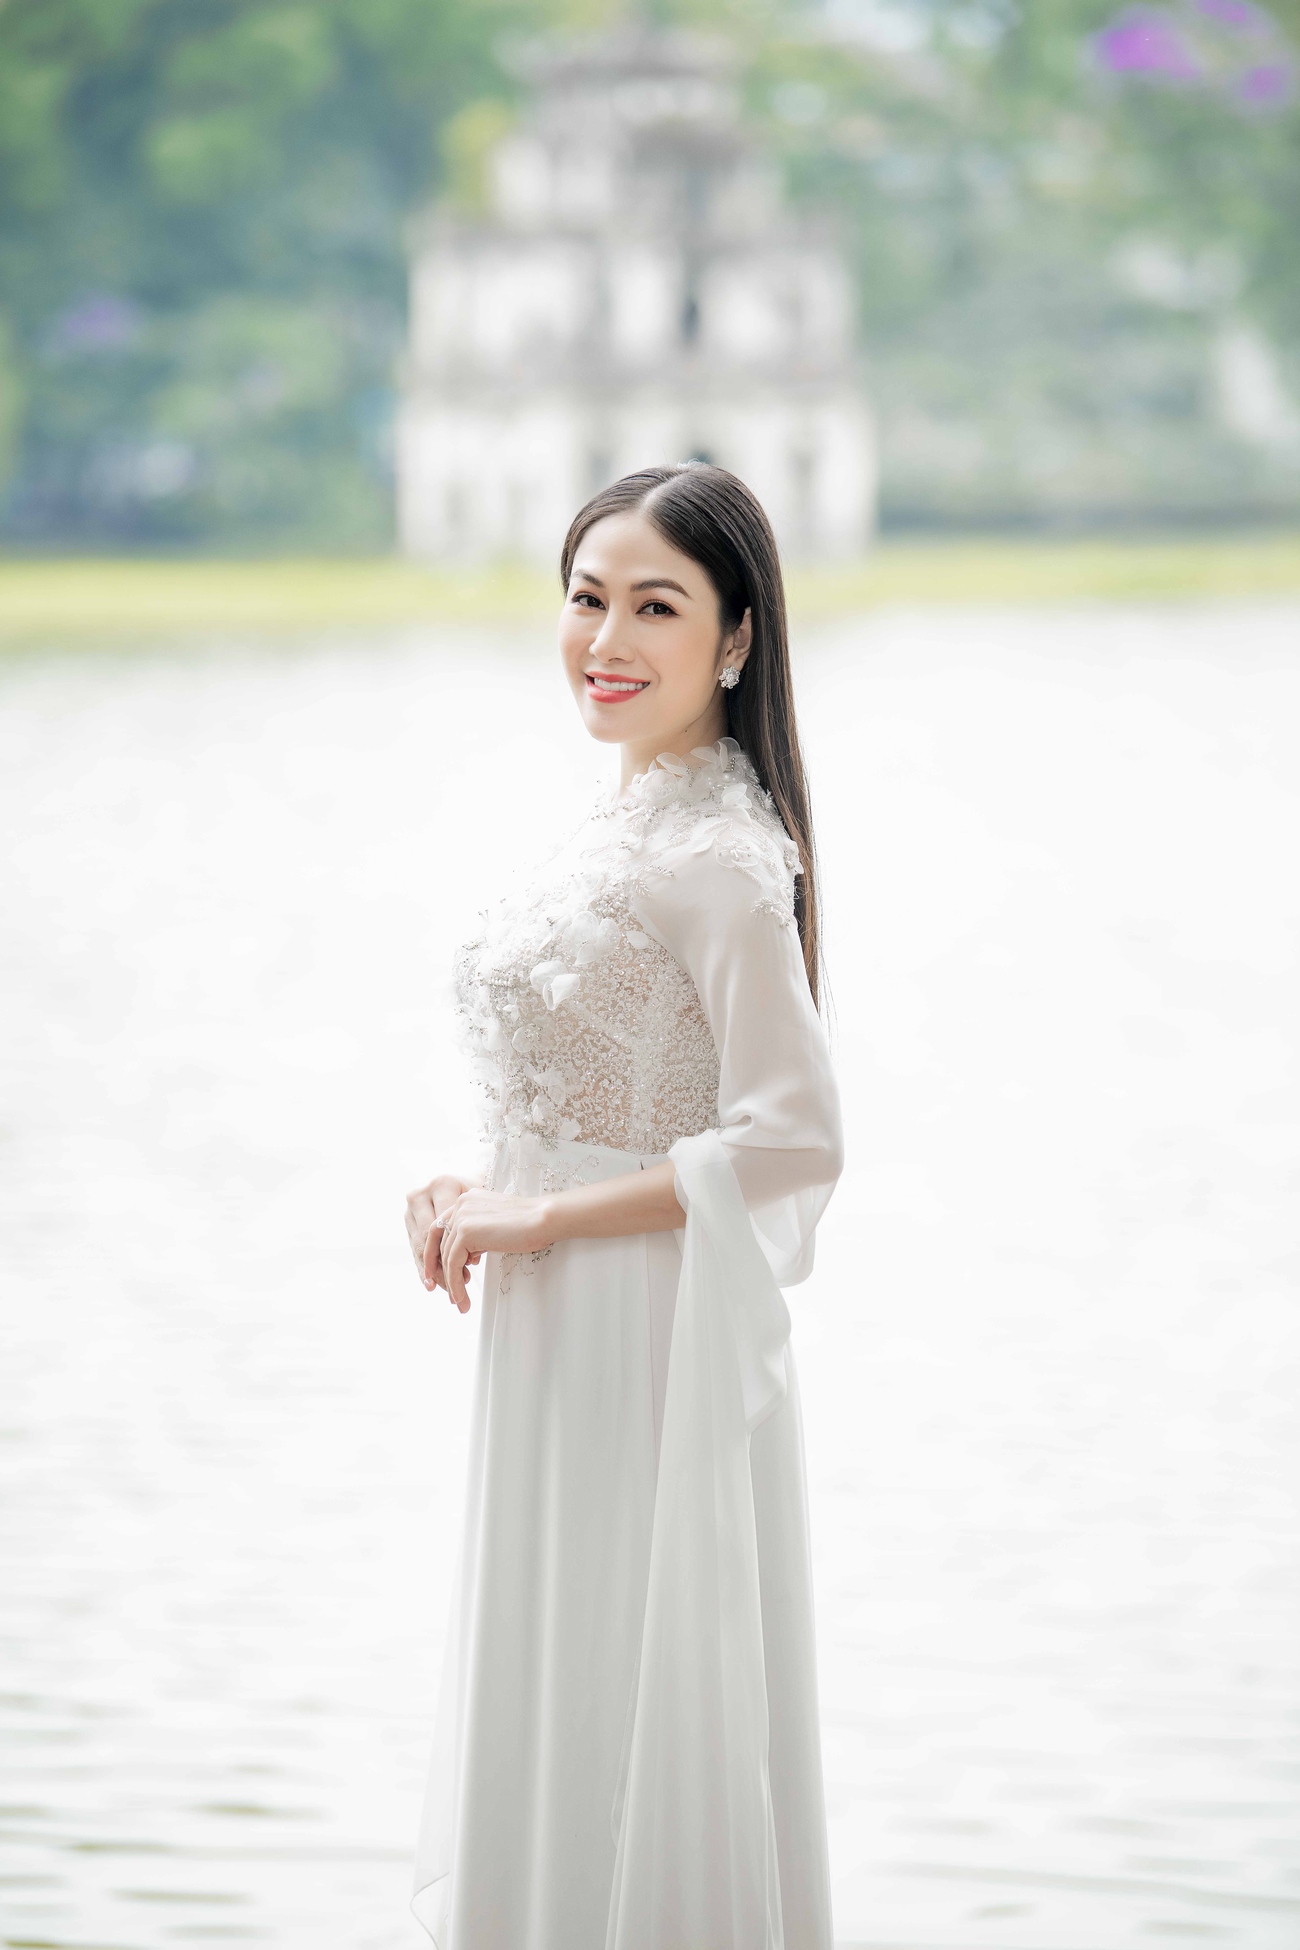 Ngắm flycam tuyệt đẹp về thắng cảnh tại Việt Nam trong MV của hoa hậu xứ Thanh - 1